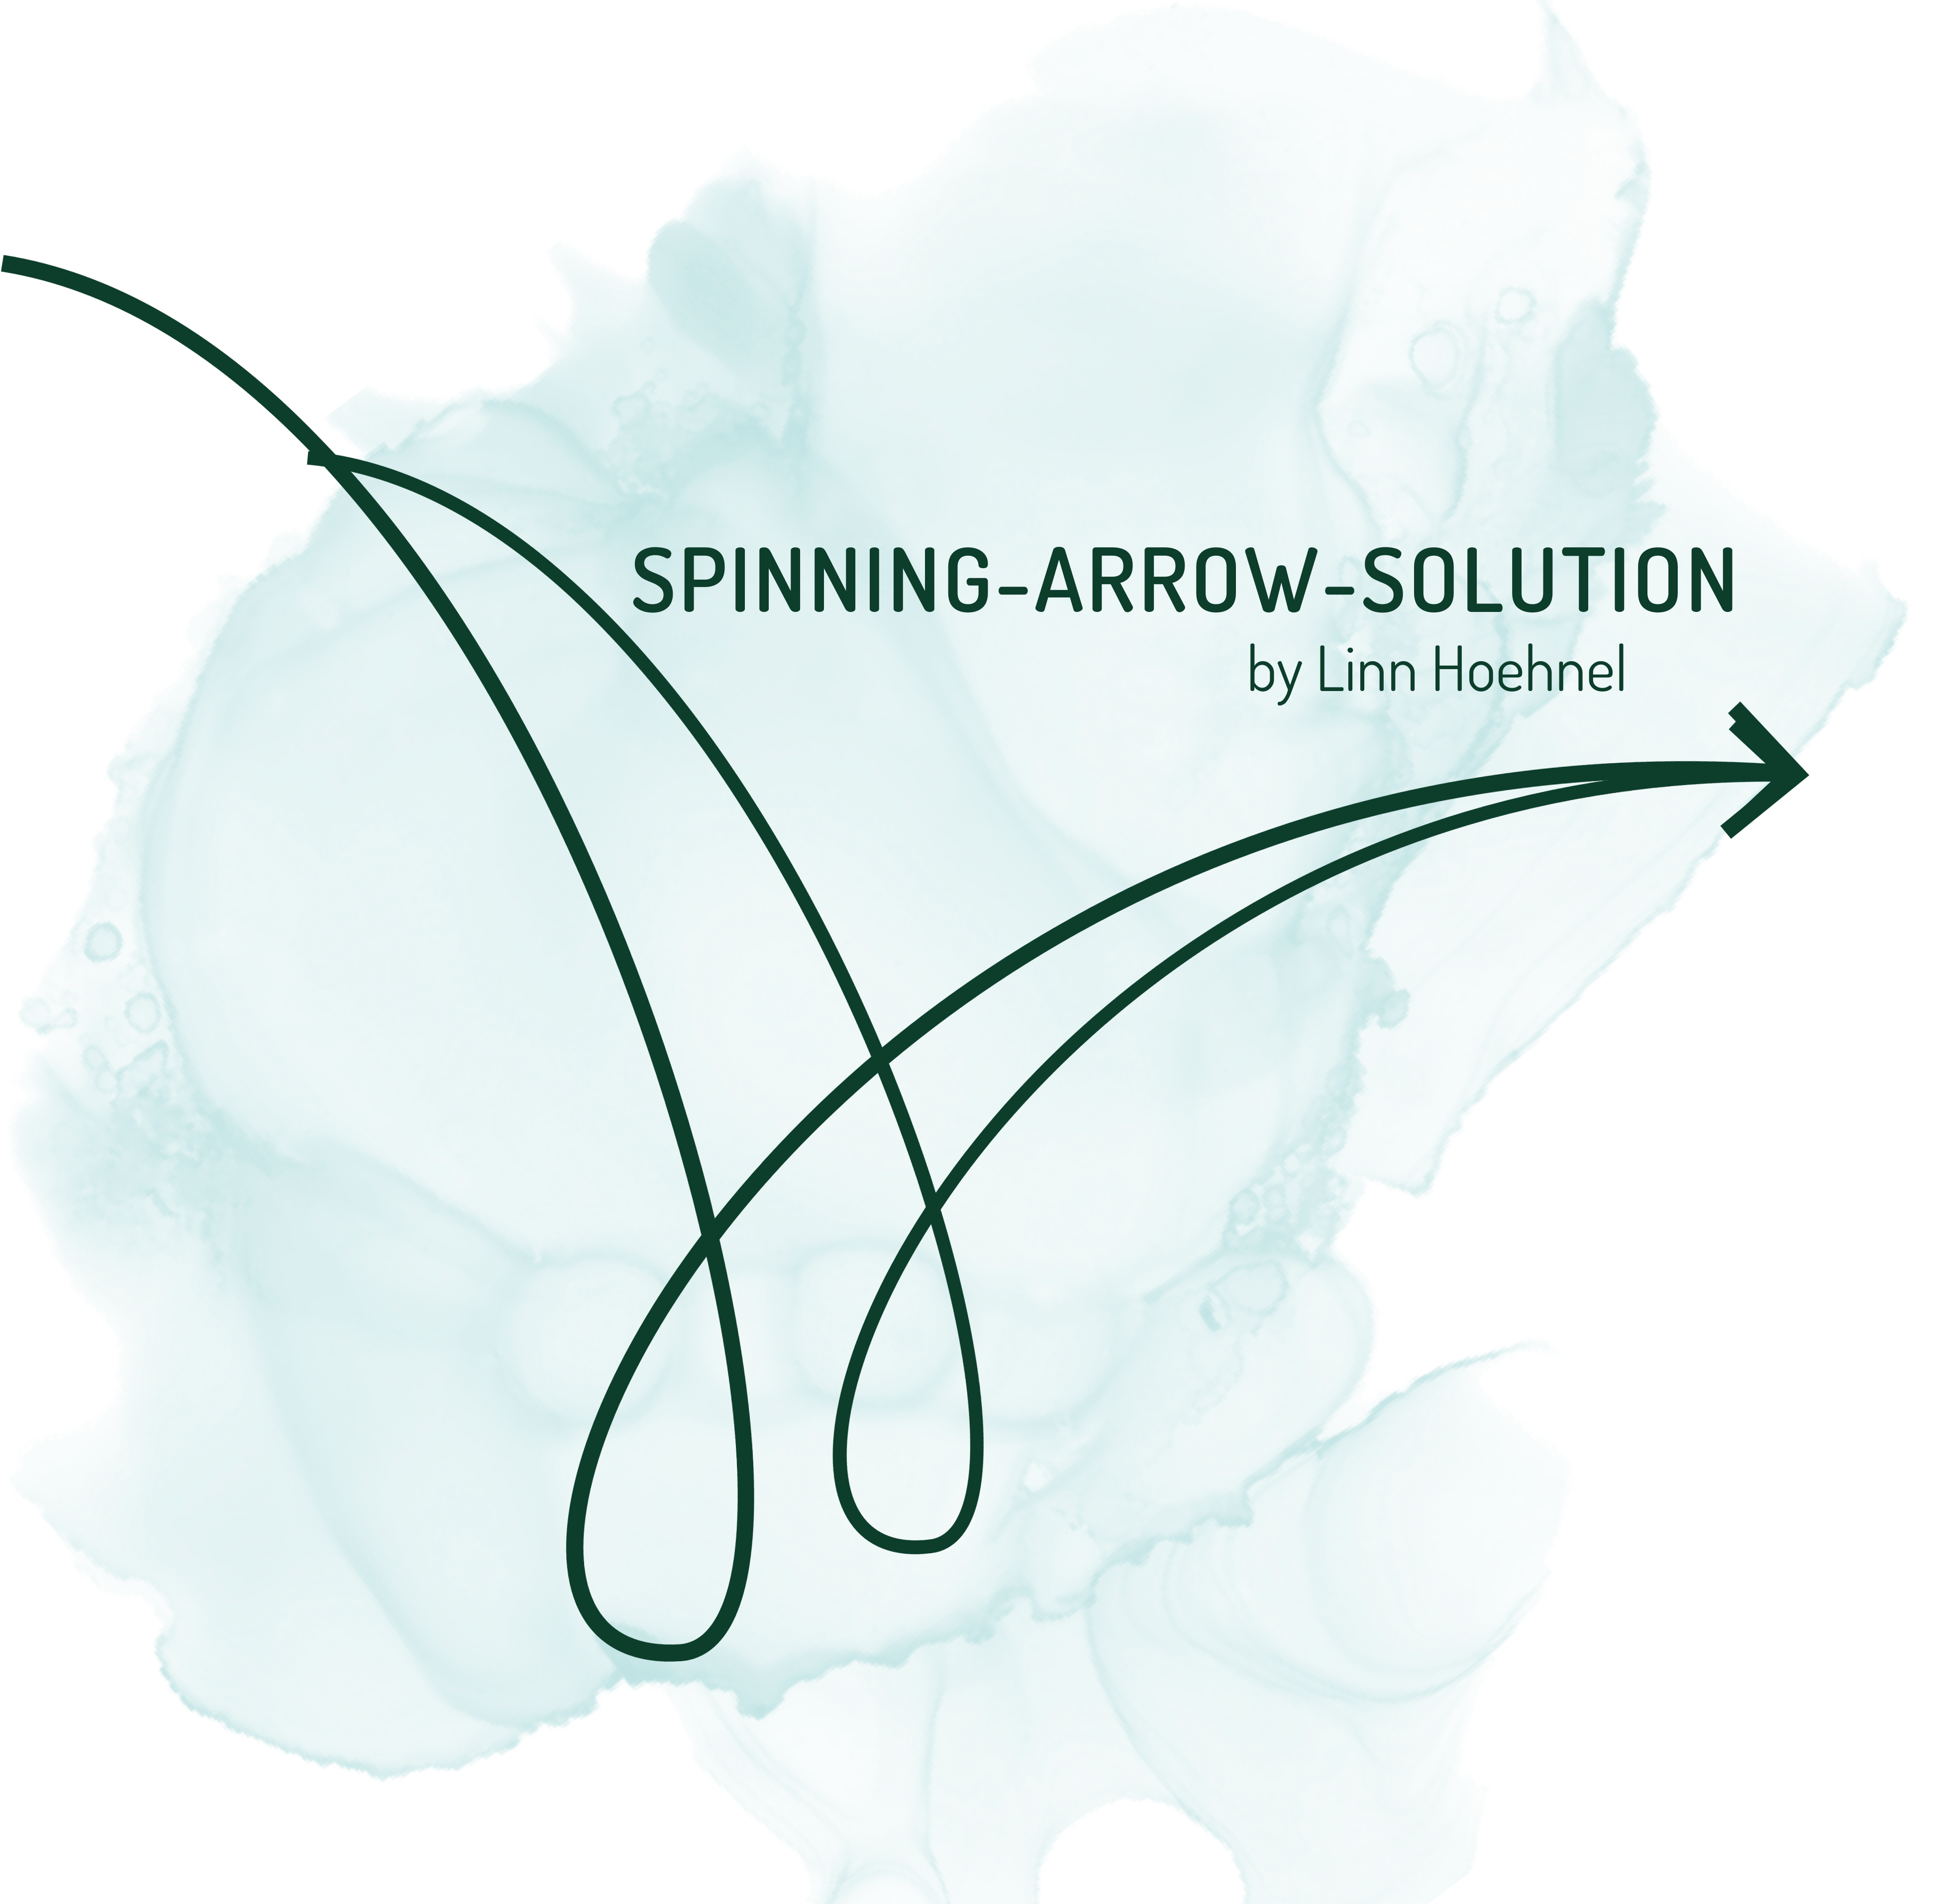 Spinning-Arrow-Solution